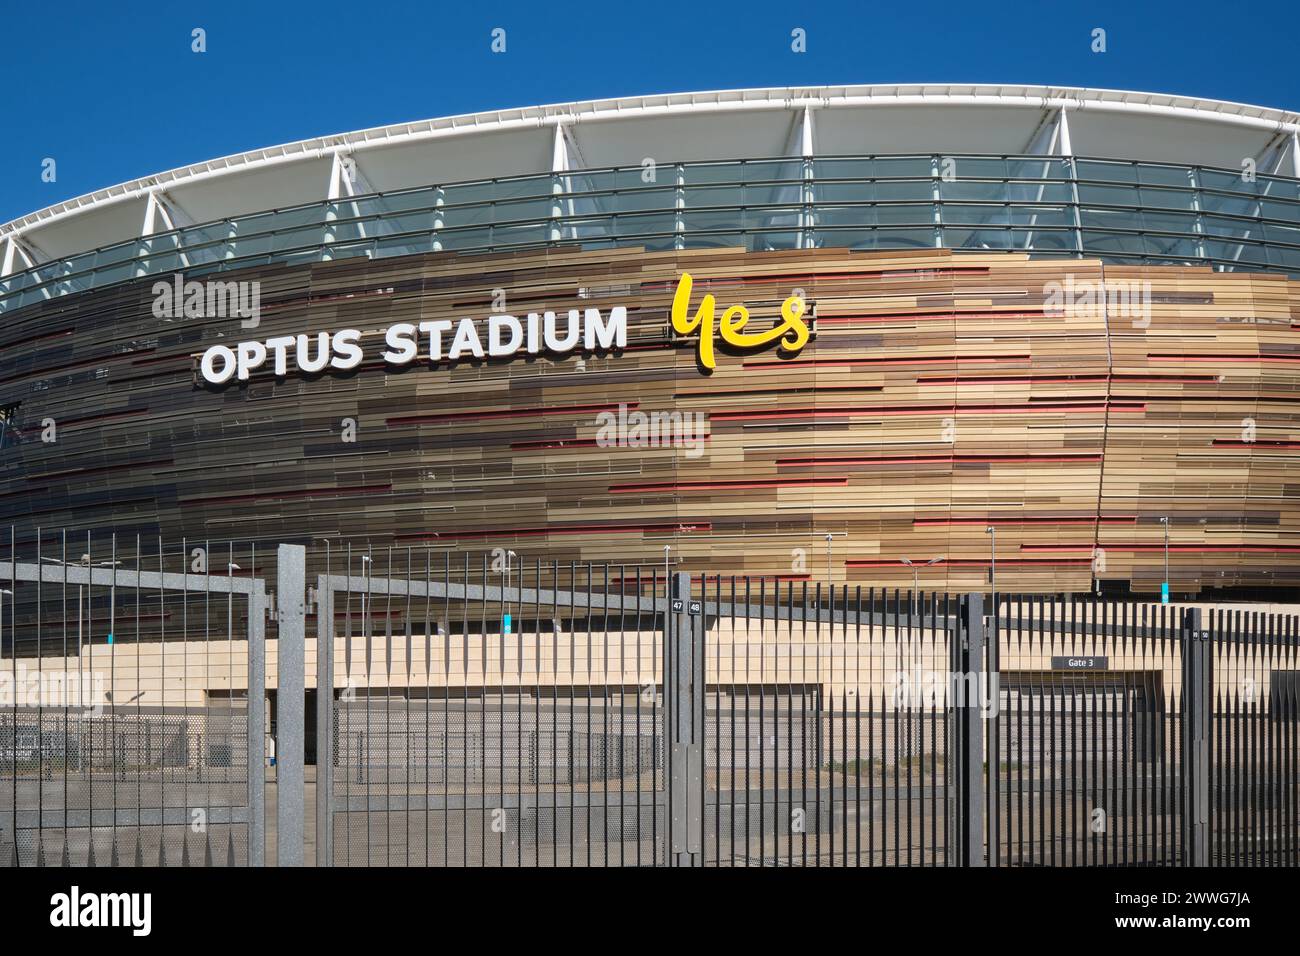 Vista ravvicinata dell'Optus Stadium, sede polifunzionale, sopra una recinzione di sicurezza, Burswood, Perth, Australia Occidentale. Foto Stock